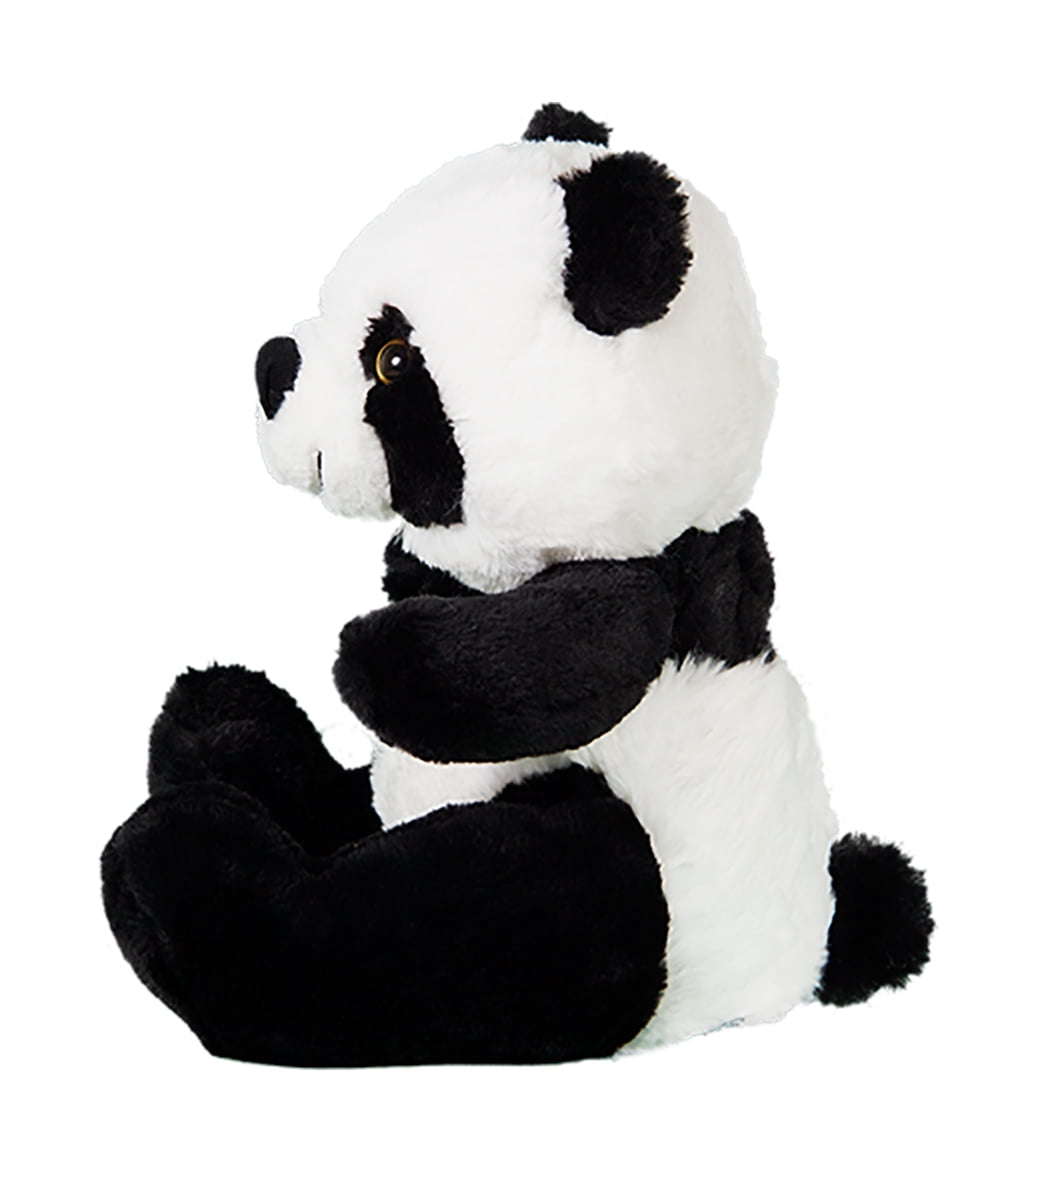 Teddy Cuddly Soft 8 inch Stuffed Pan the Panda...We stuff 'em...you love 'em! 